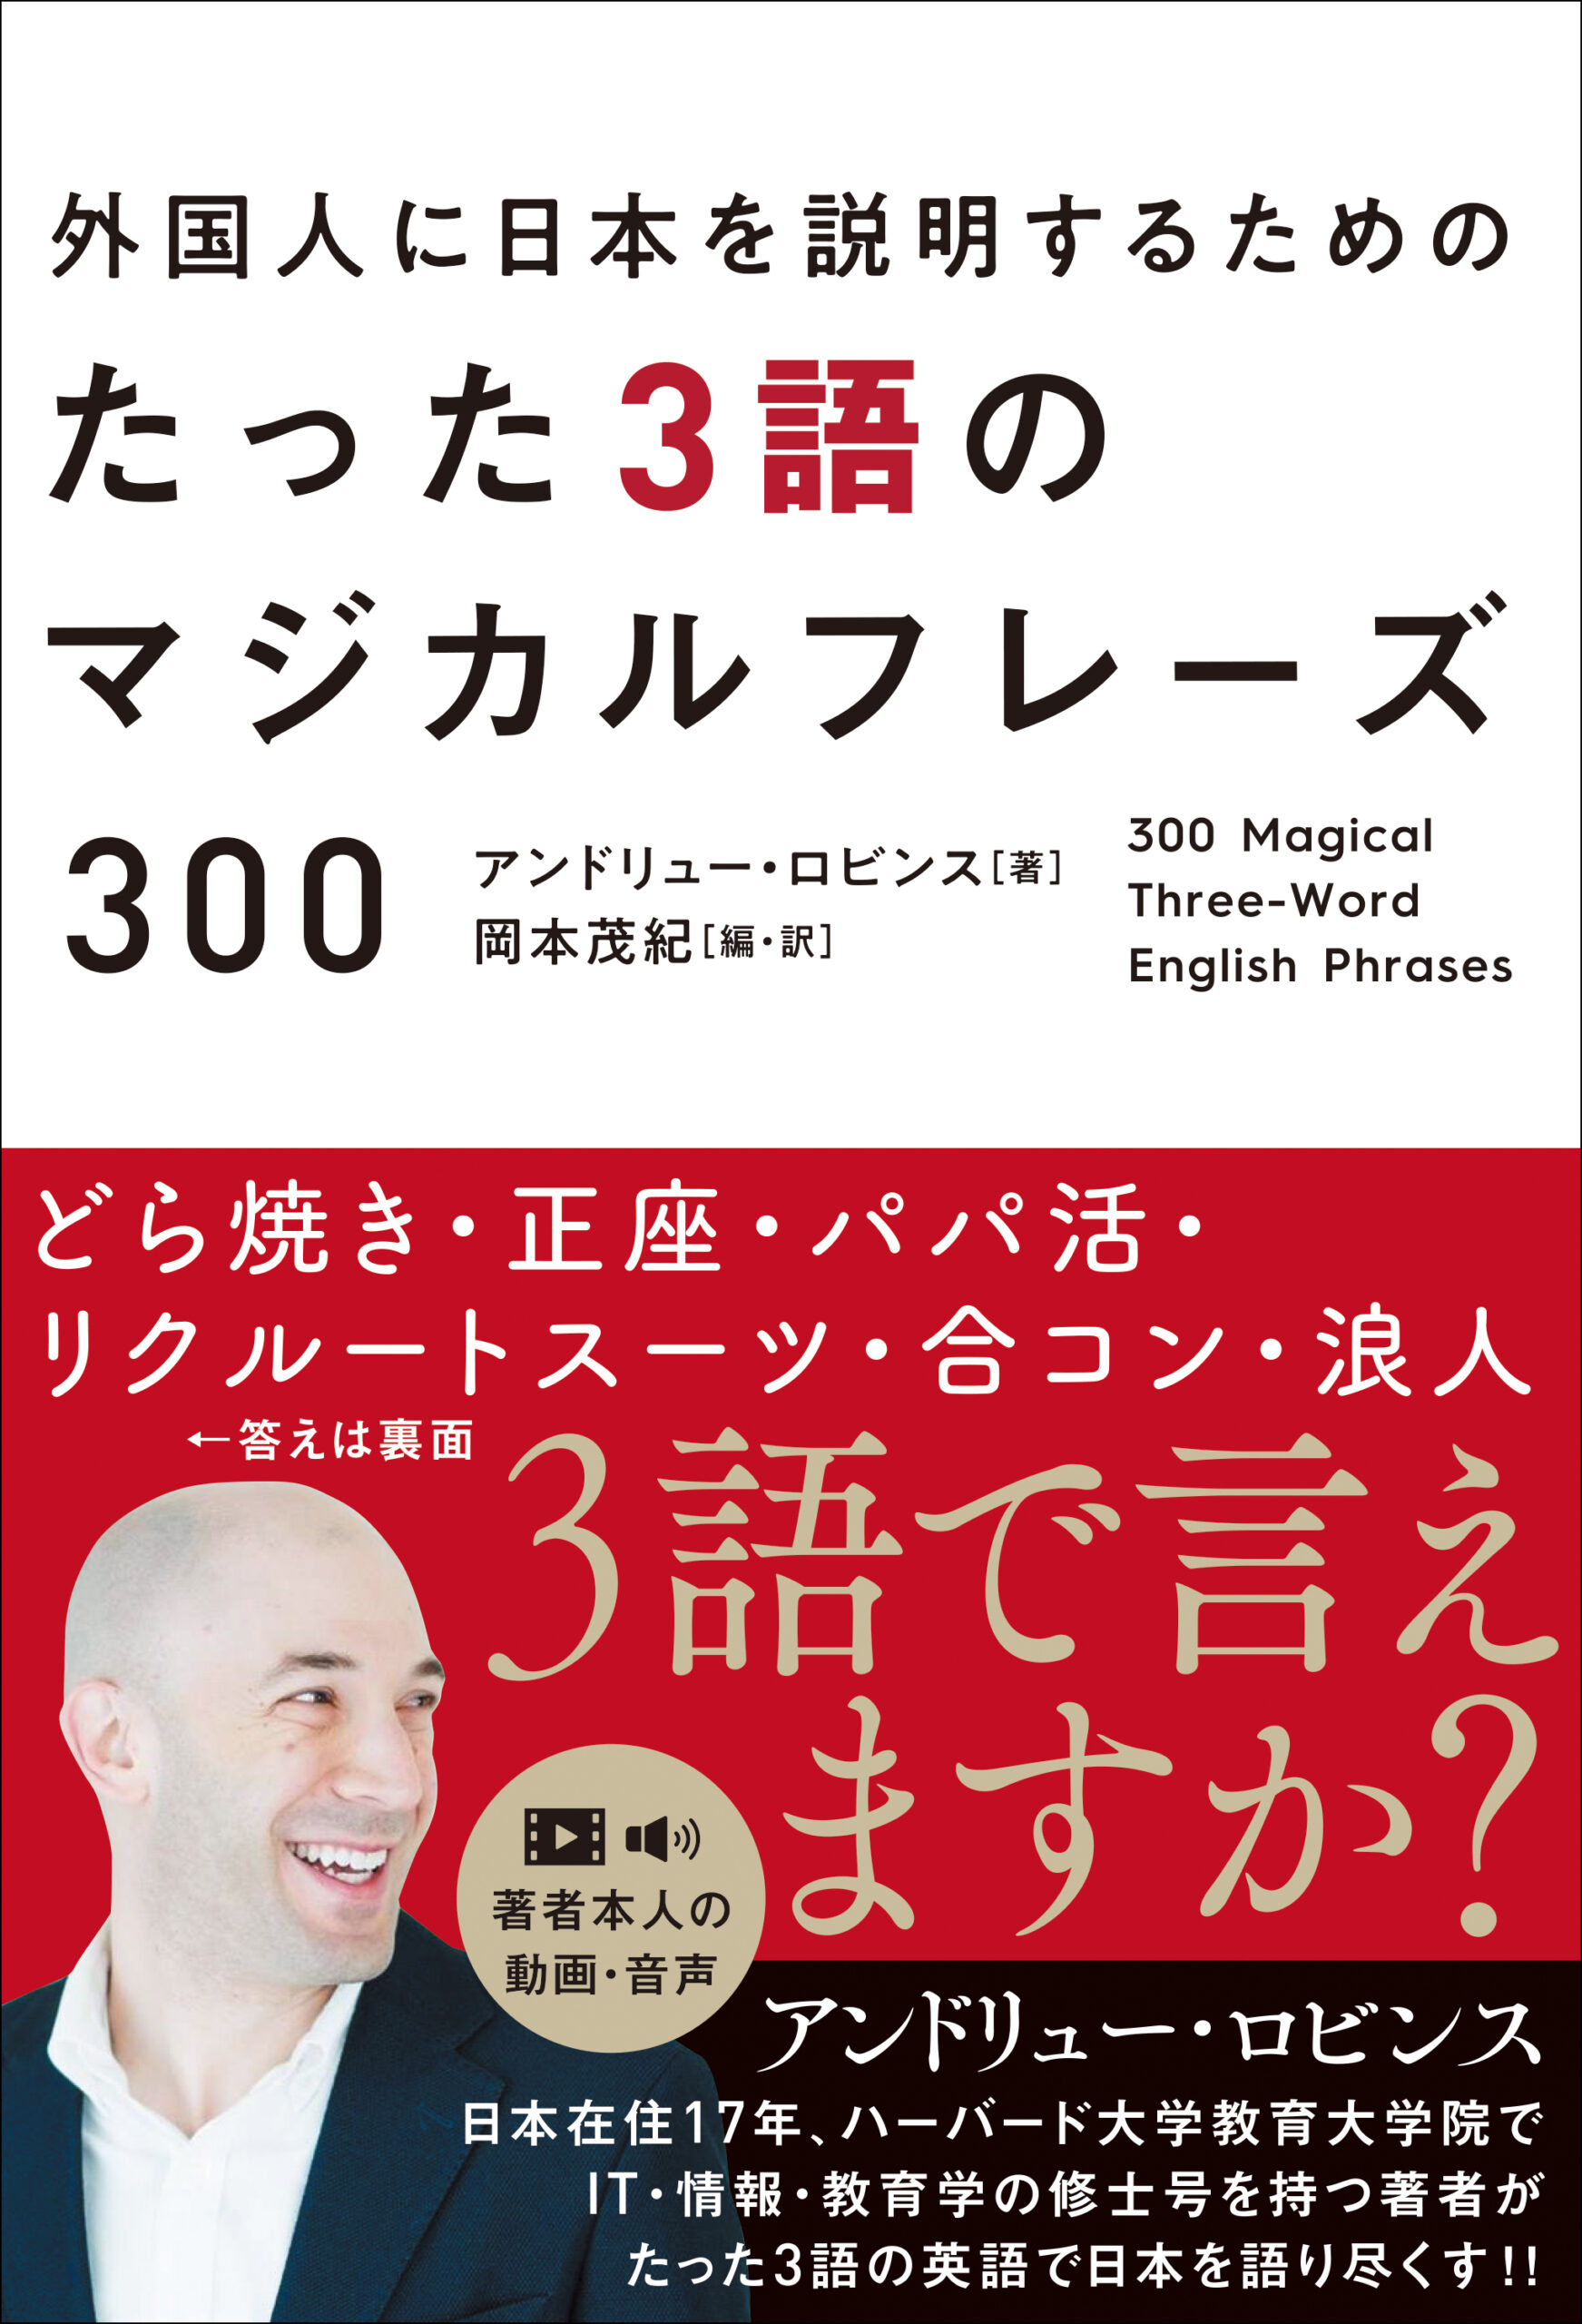 『外国人に日本を説明するためのたった３語のマジカルフレーズ300』アンドリュー・ロビンス (著)、岡本茂紀 (編・訳)